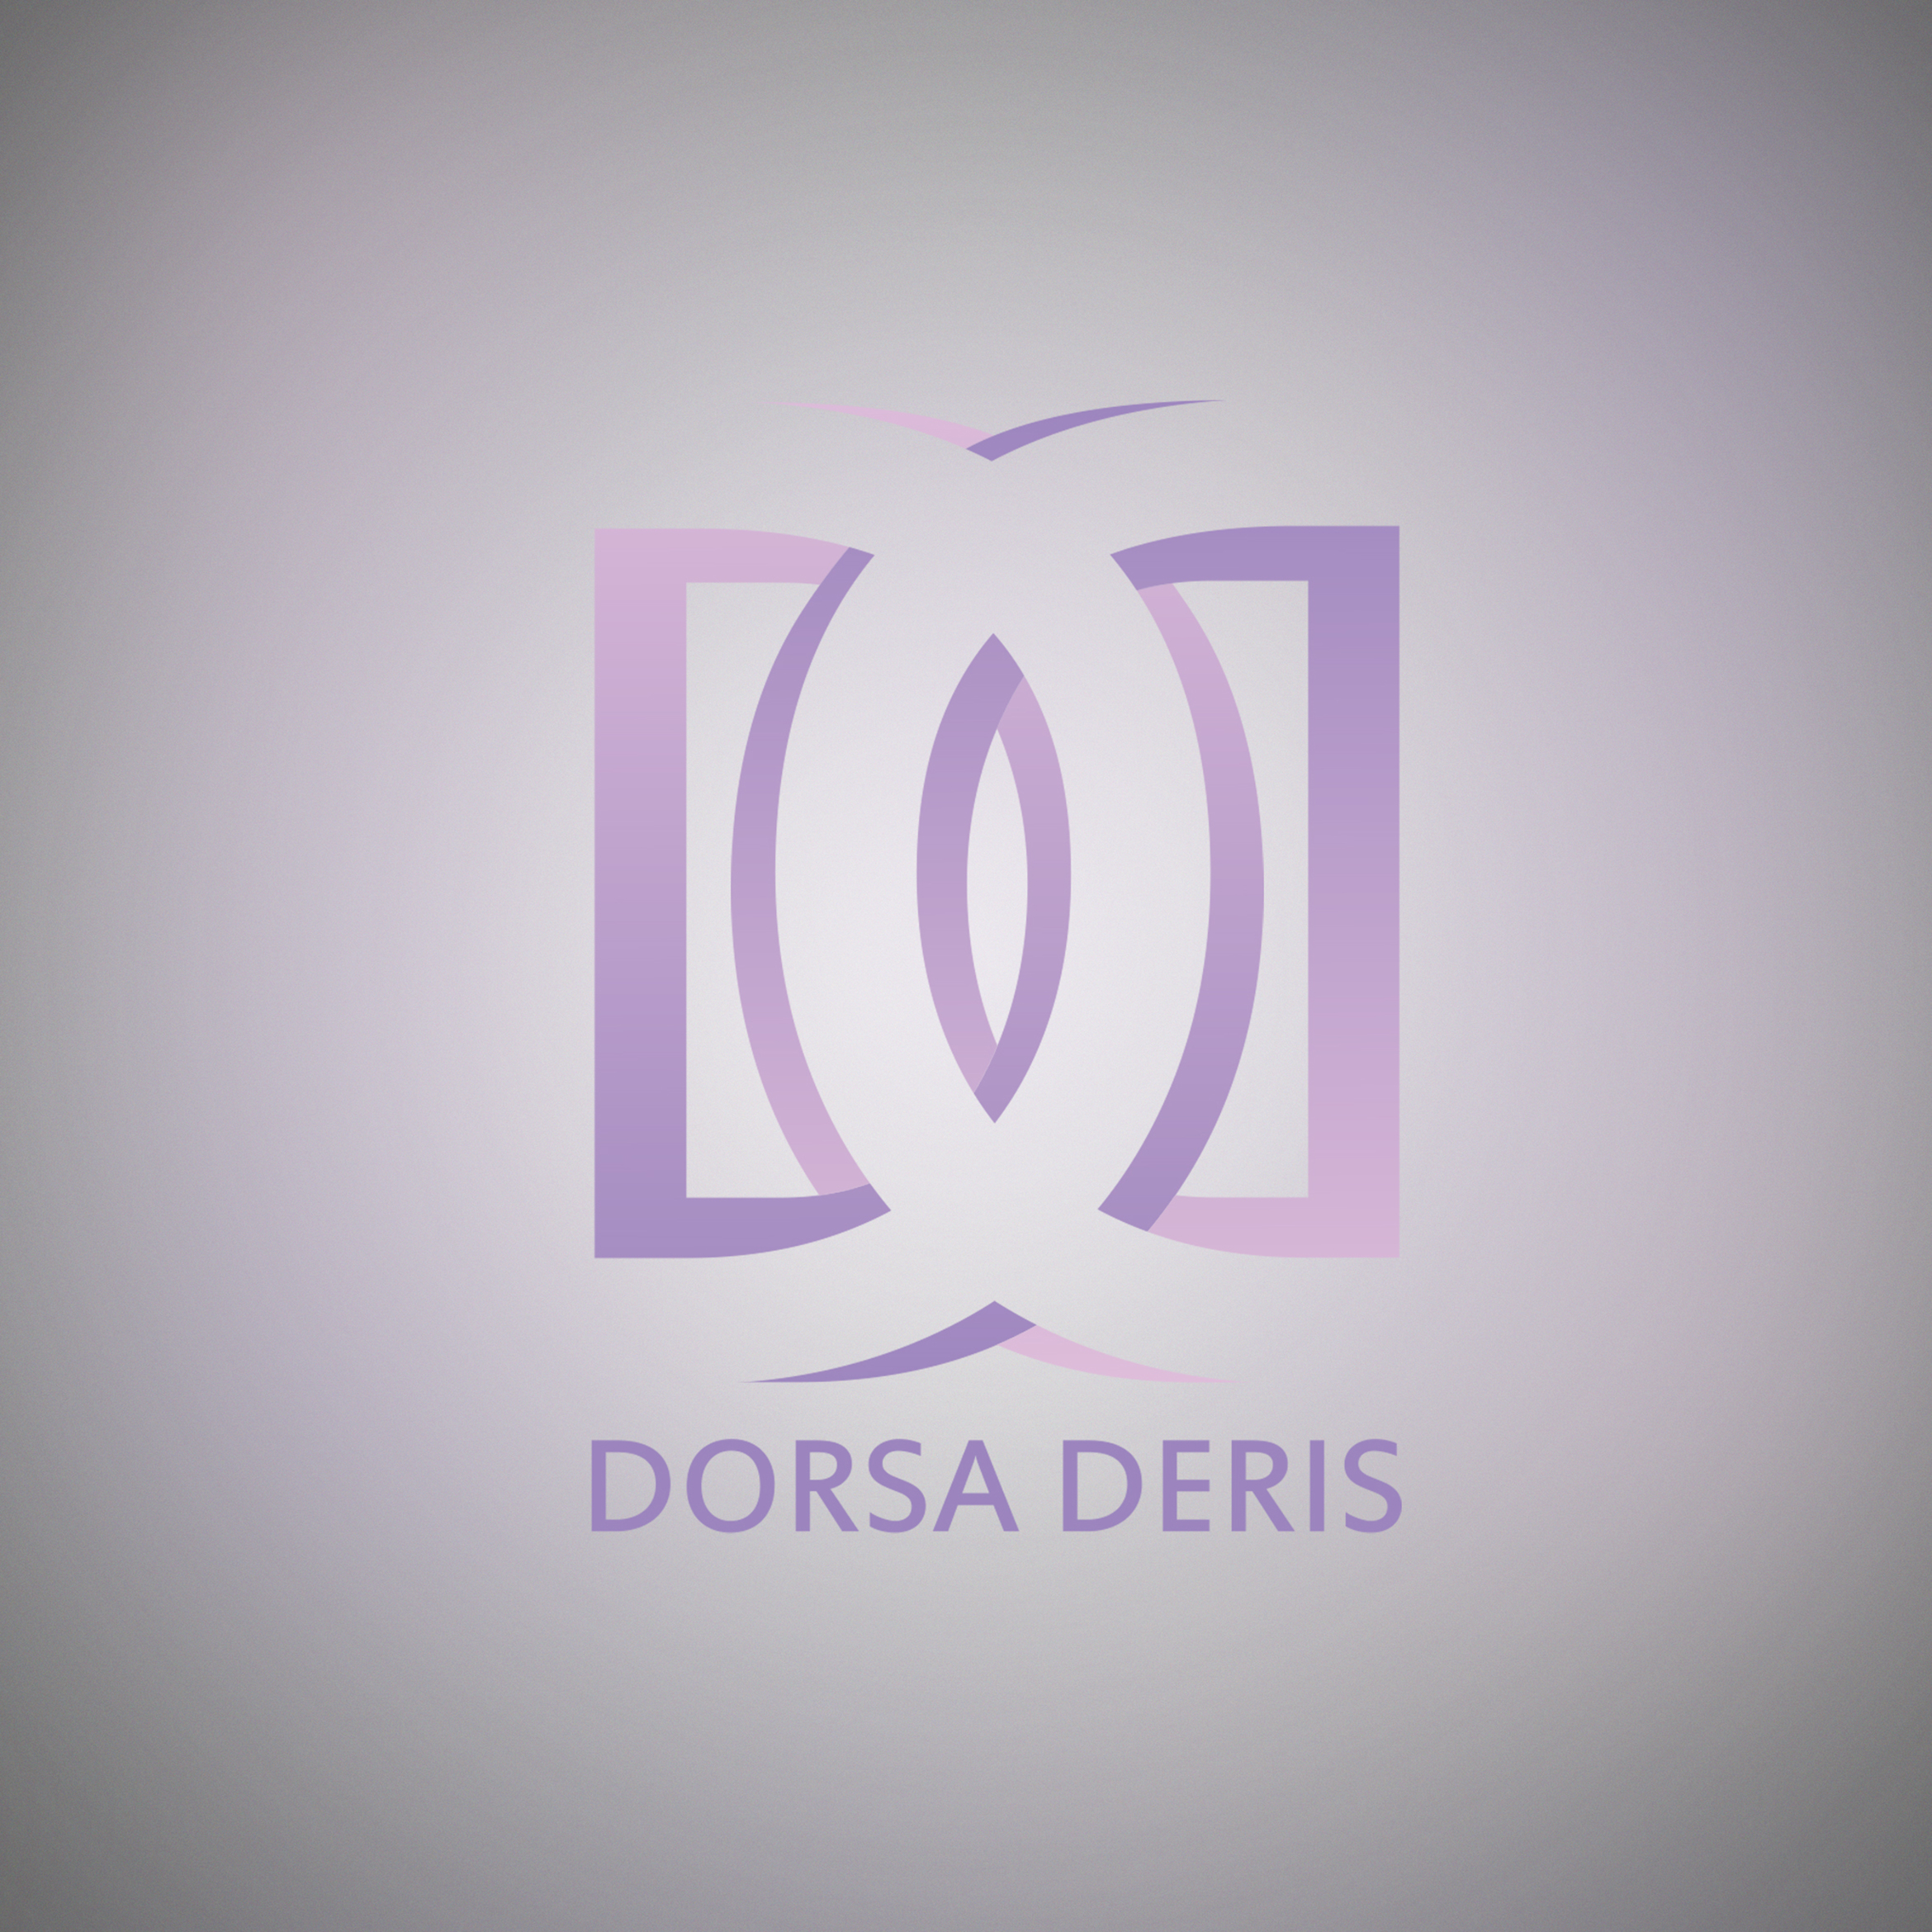 Dorsa Deris-03 copy.jpg